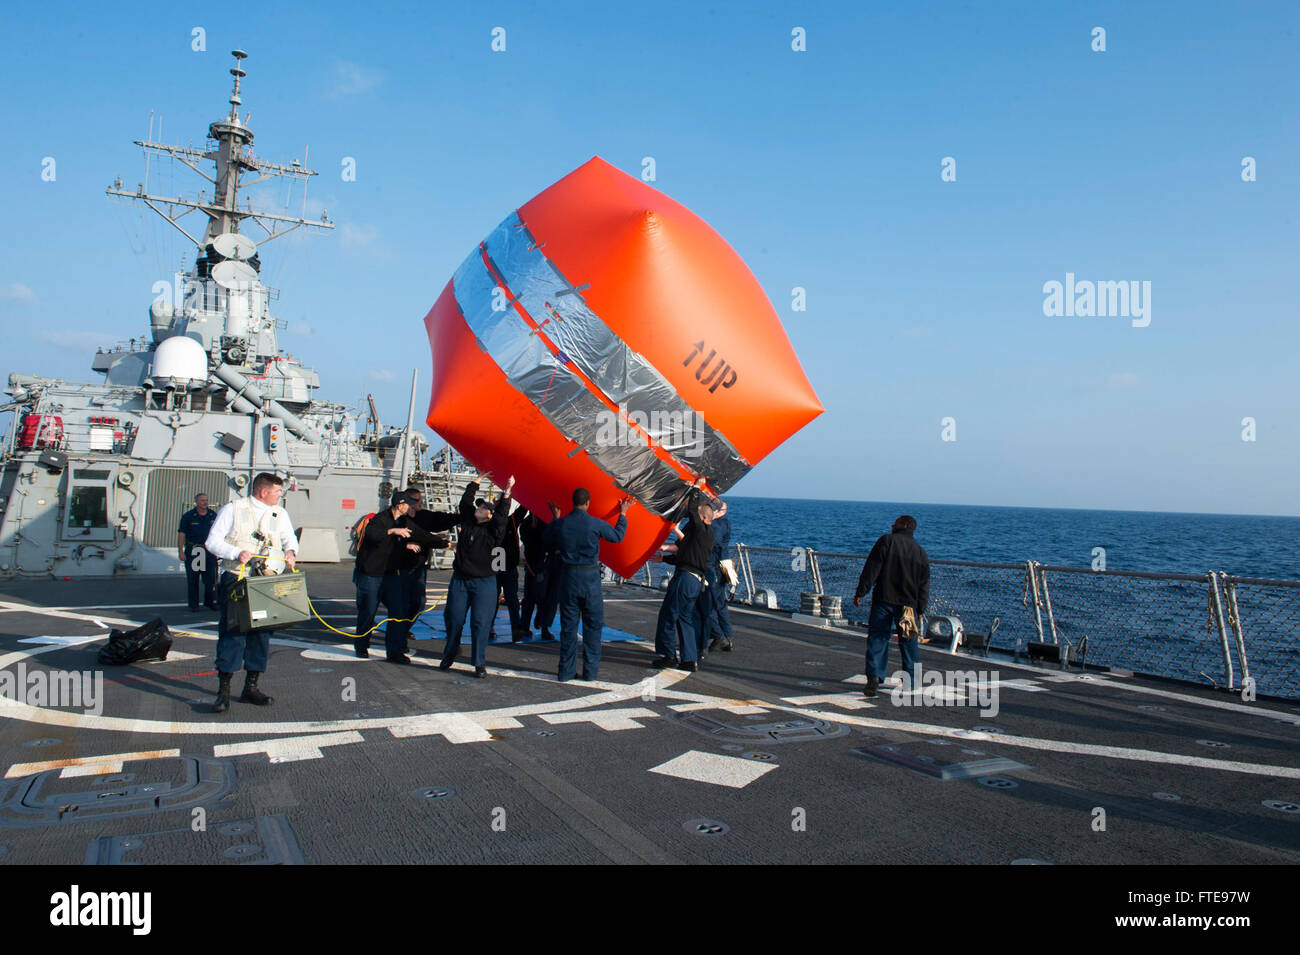 Inflatable target immagini e fotografie stock ad alta risoluzione - Alamy